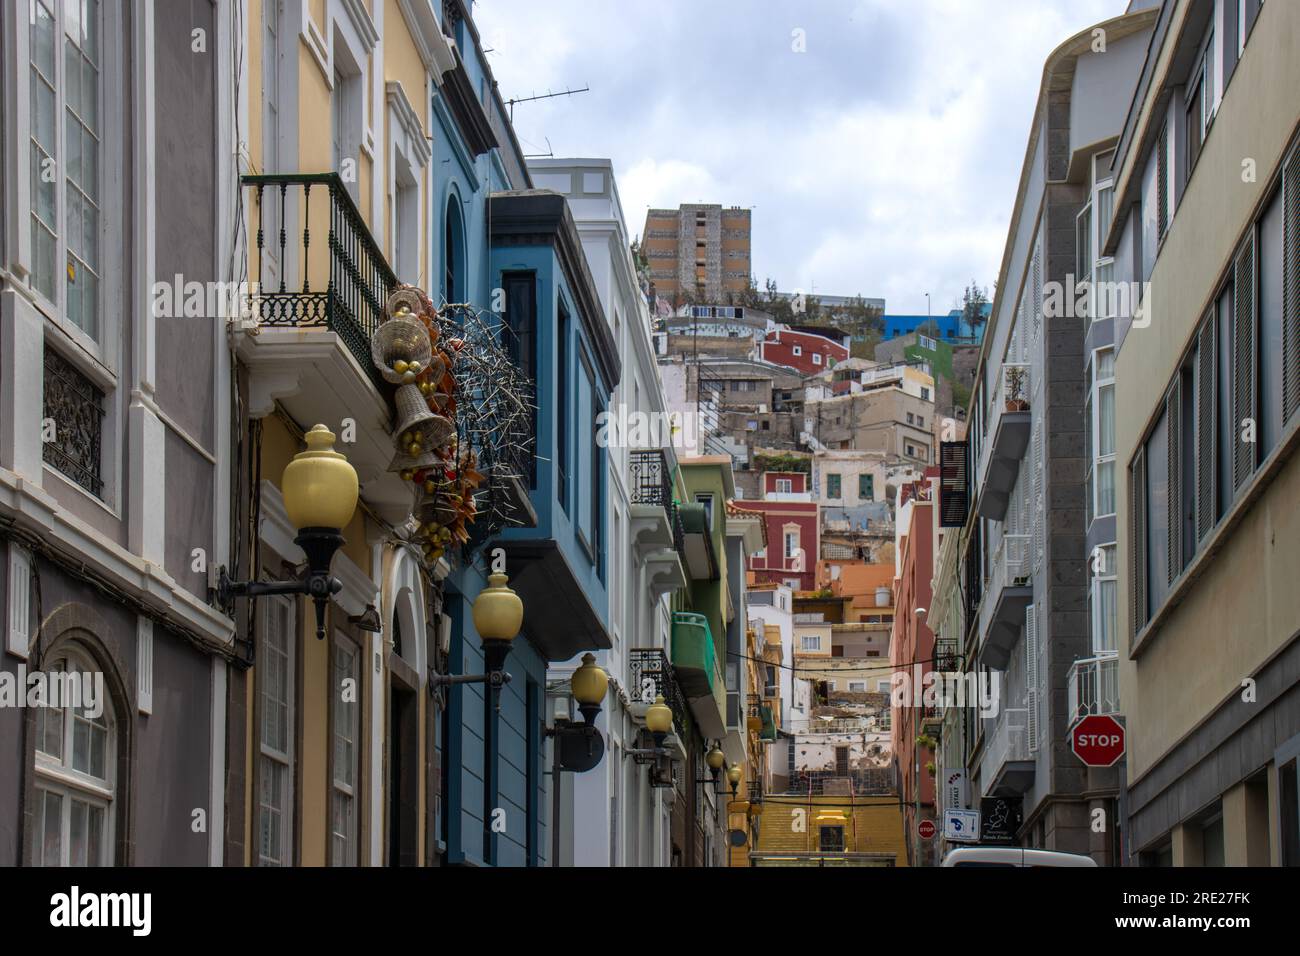 Vista inusual desde una calle del barrio de Triana a los coloridos barrios de Las Palmas, Gran Canaria, España Stock Photo